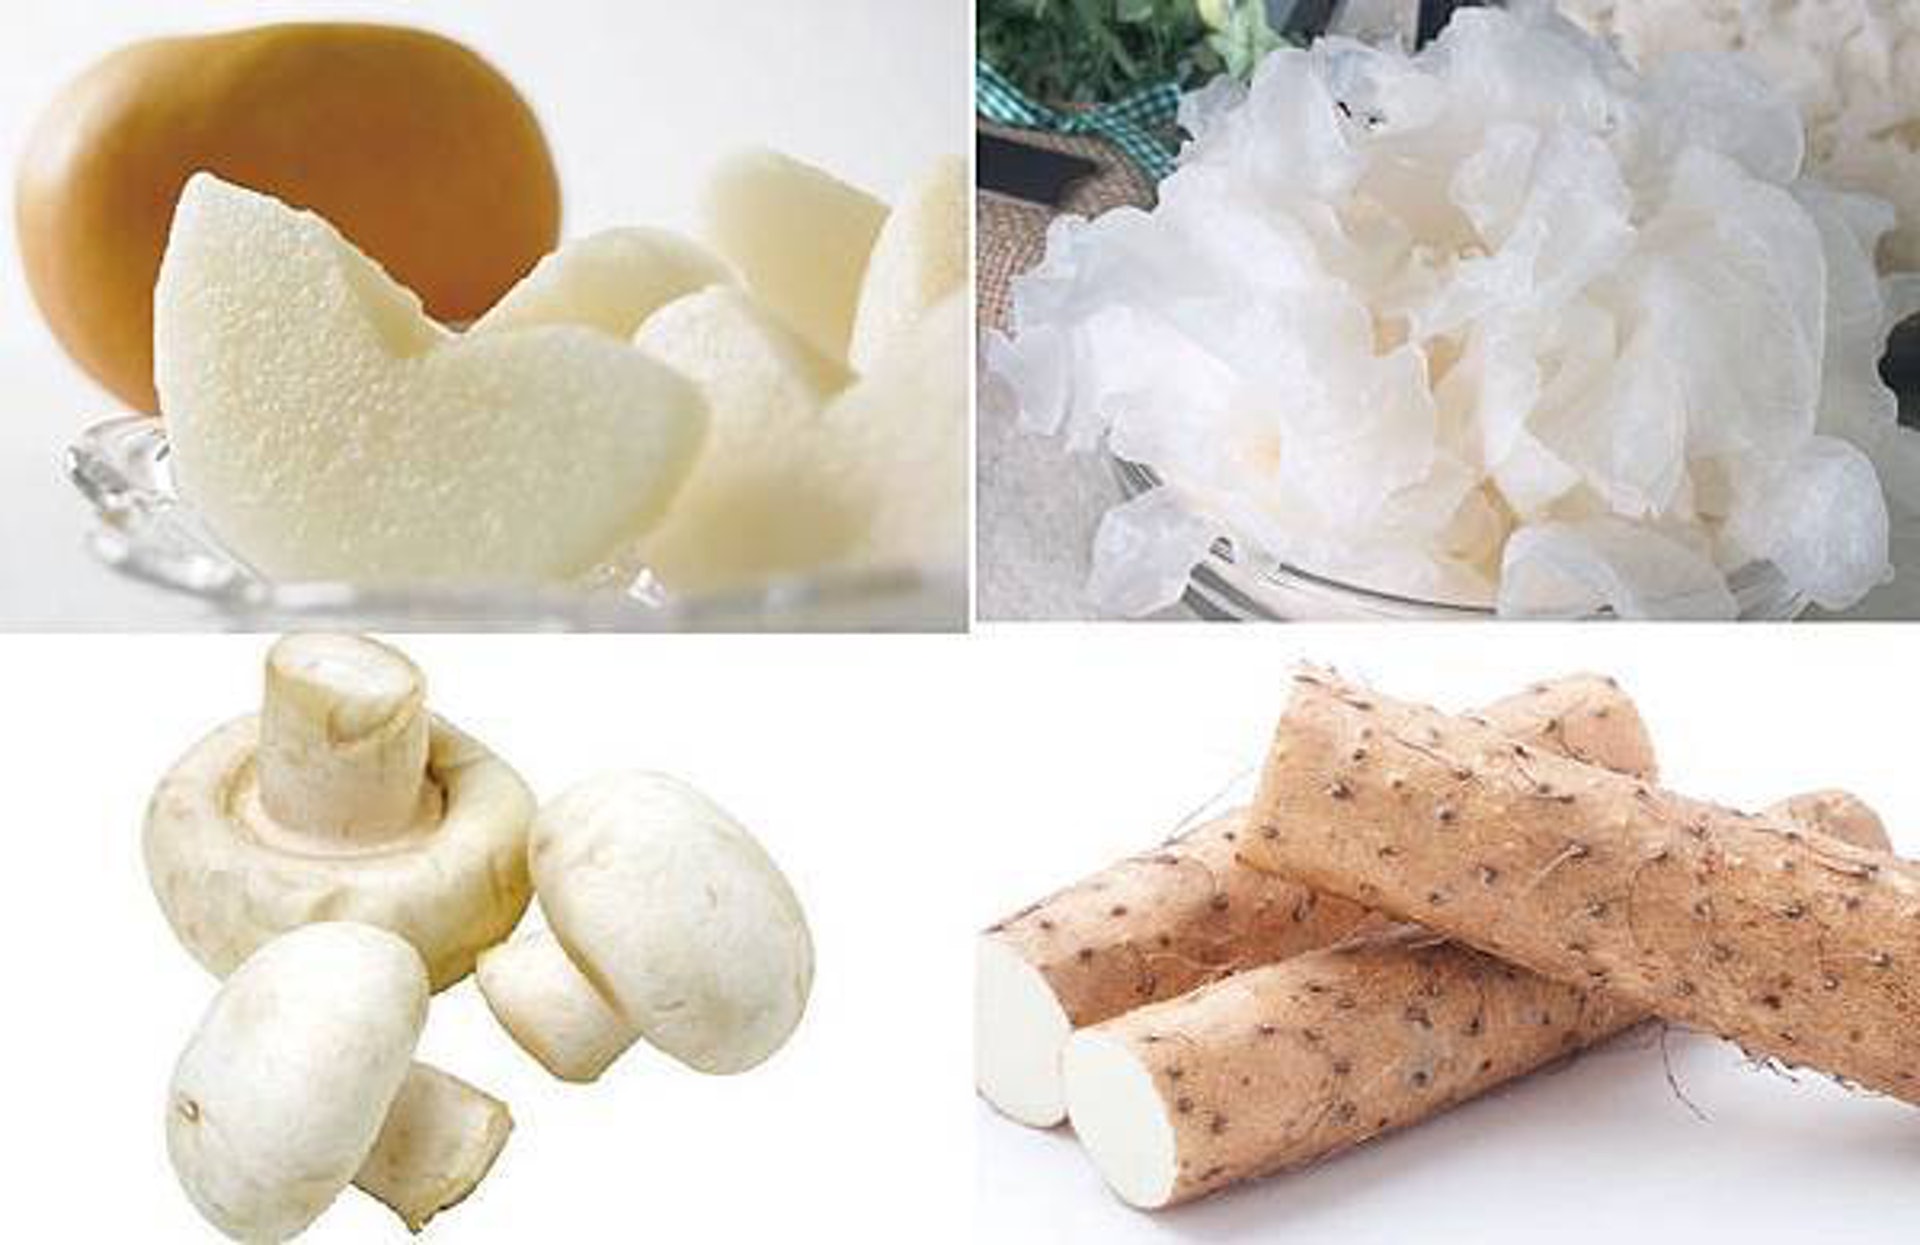 「白色入肺」，因此秋季應多吃白色食物，例如雪梨、雪耳、白磨菇、山藥等，有助補肺潤燥、滋陰益氣。（圖片：joyhui91）